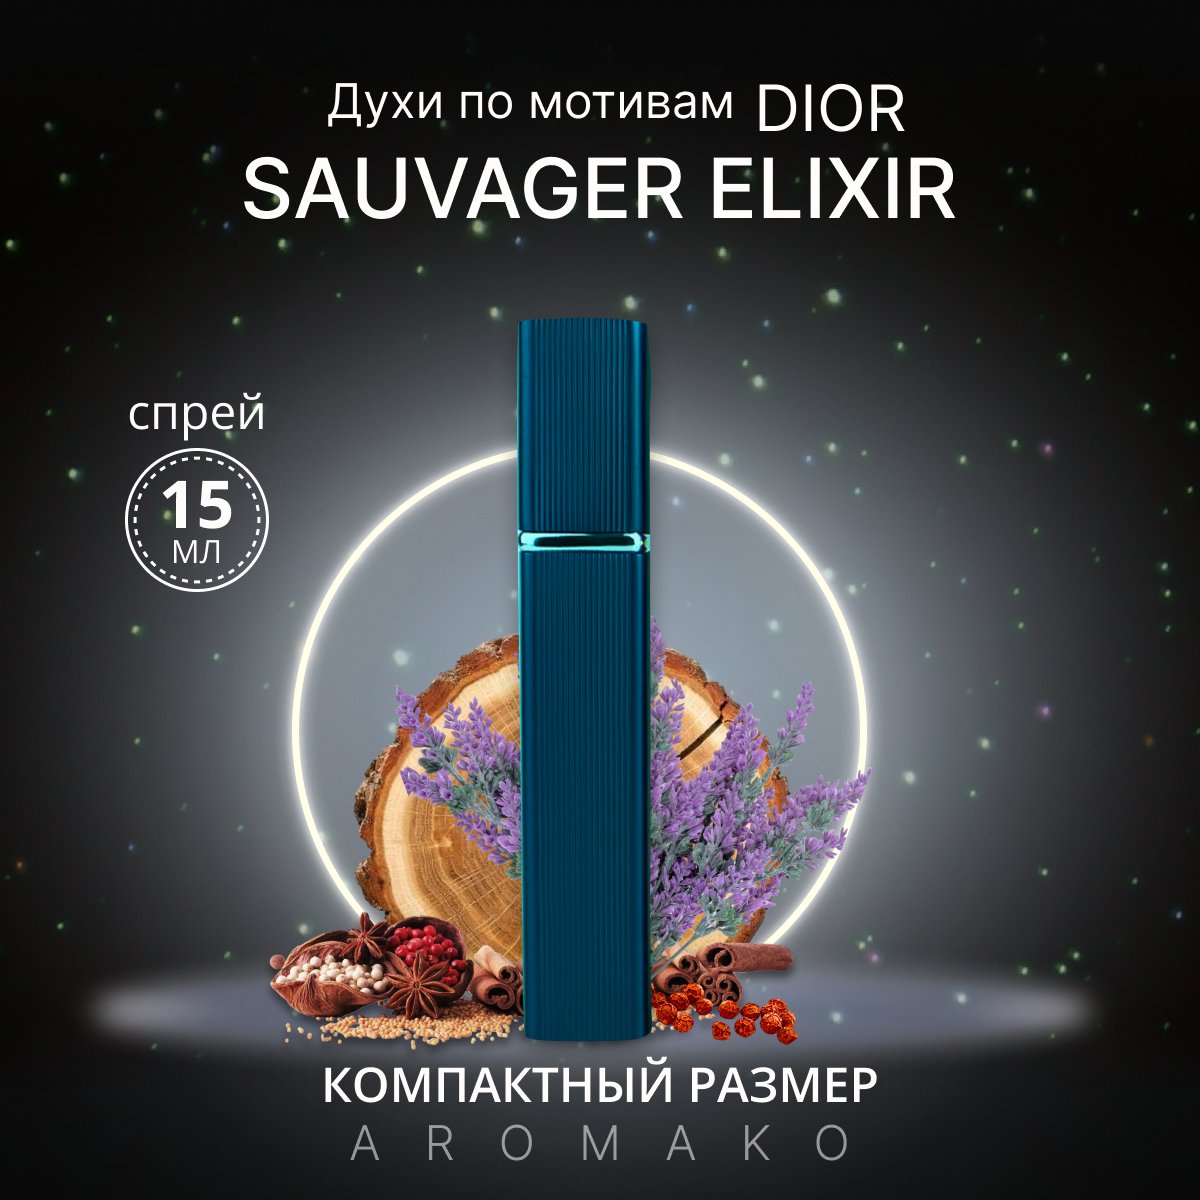 Духи по мотивам Sauvage Elixir, Dior спрей 15 мл AROMAKO